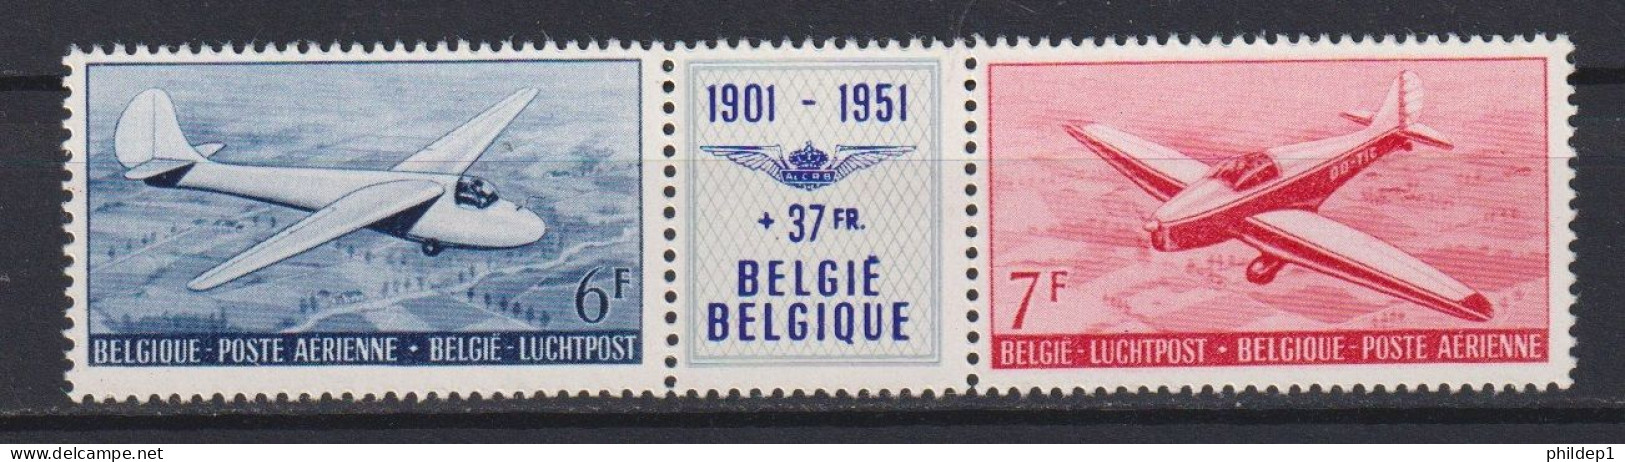 Belgique COB N° PA26/27 (triptyque) **, MNH, Neuf(s). Fraîcheur Postale. TTB !!!! - Postfris